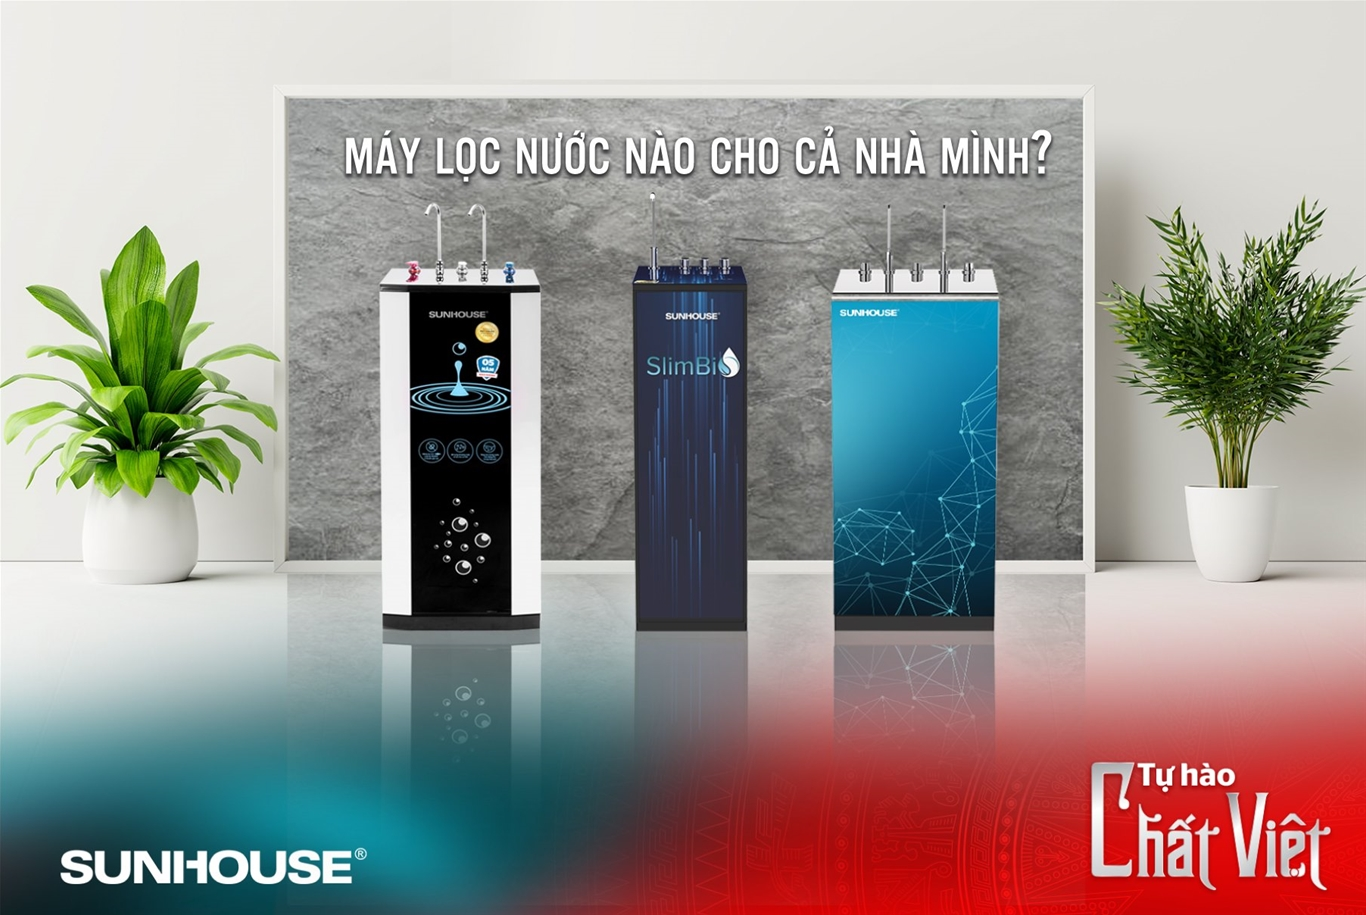 Máy lọc nước tủ đứng là dòng thiết bị phổ biến và có tính ứng dụng cao